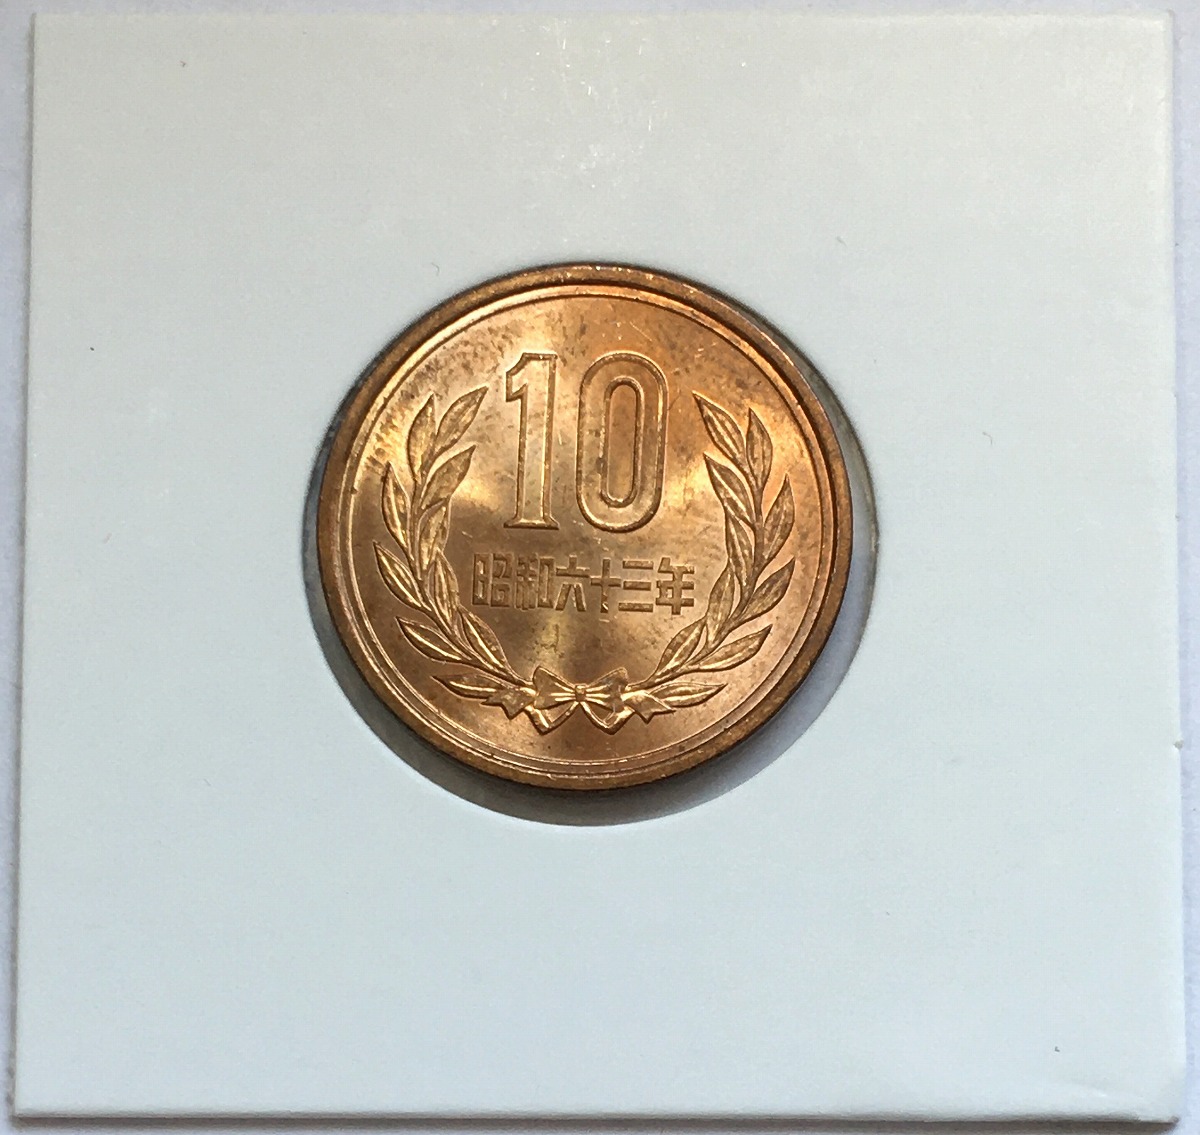 1988年(昭和63年) 10円青銅貨 ギザなし ロール出し 未使用極美品